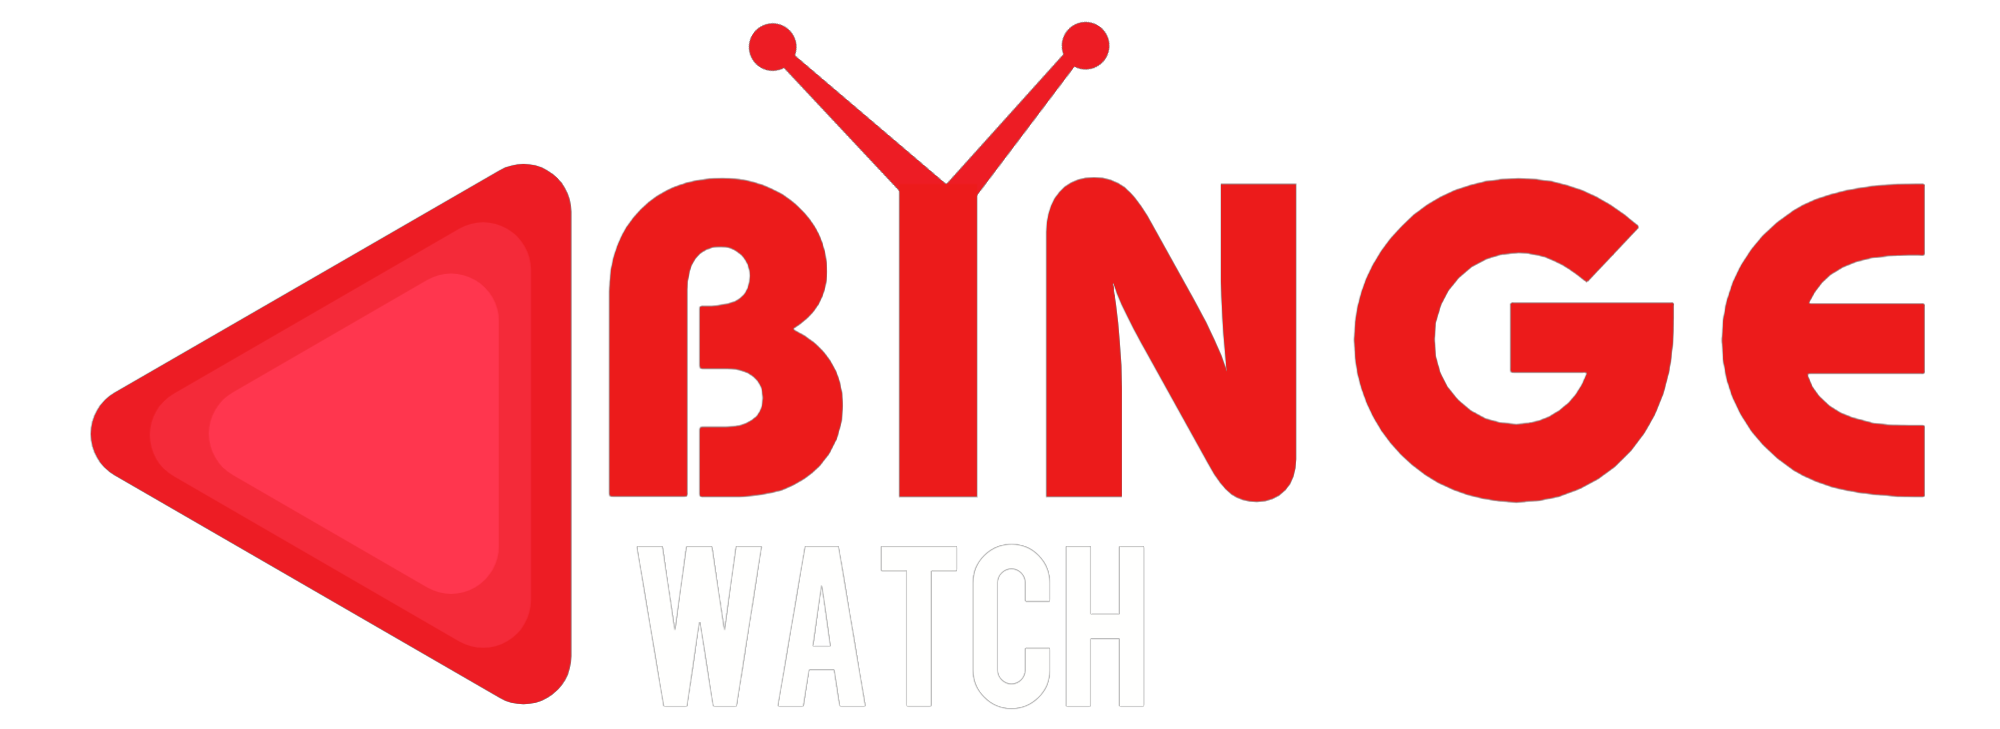 binge watch logo